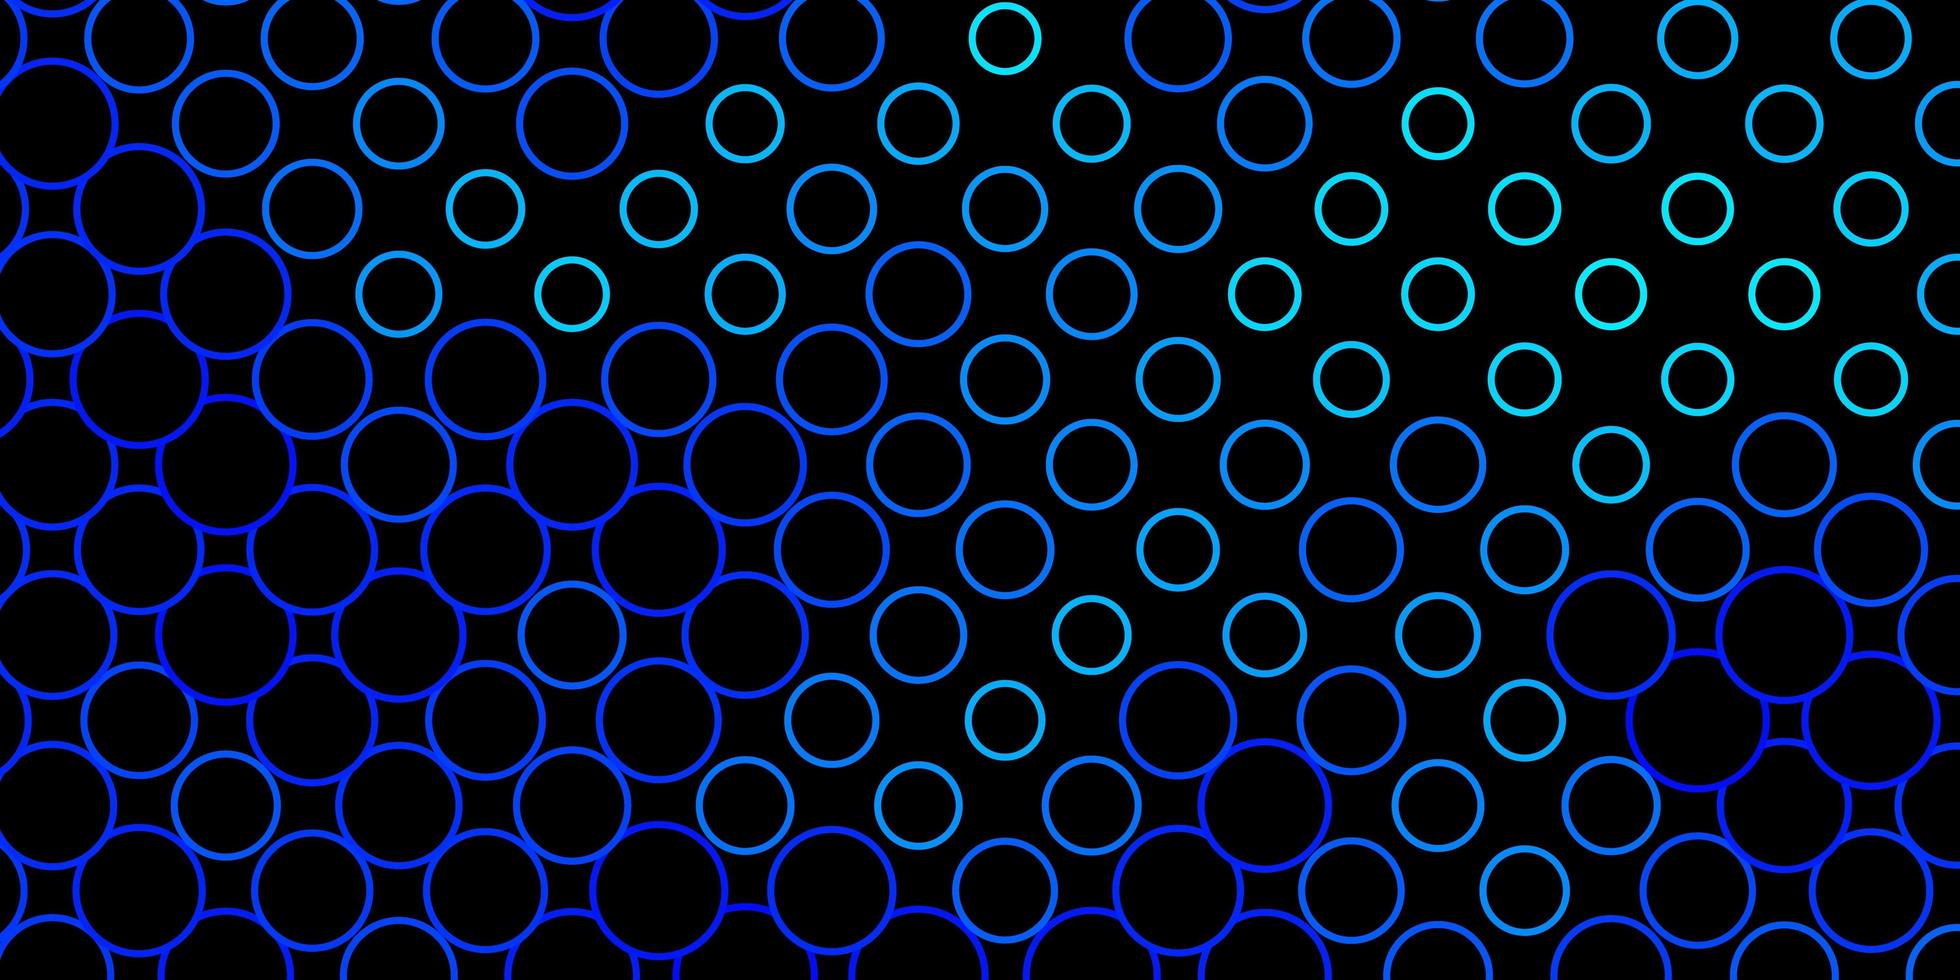 toile de fond de vecteur bleu foncé avec des cercles. illustration colorée avec des points de dégradé dans un style nature. motif pour papiers peints, rideaux.